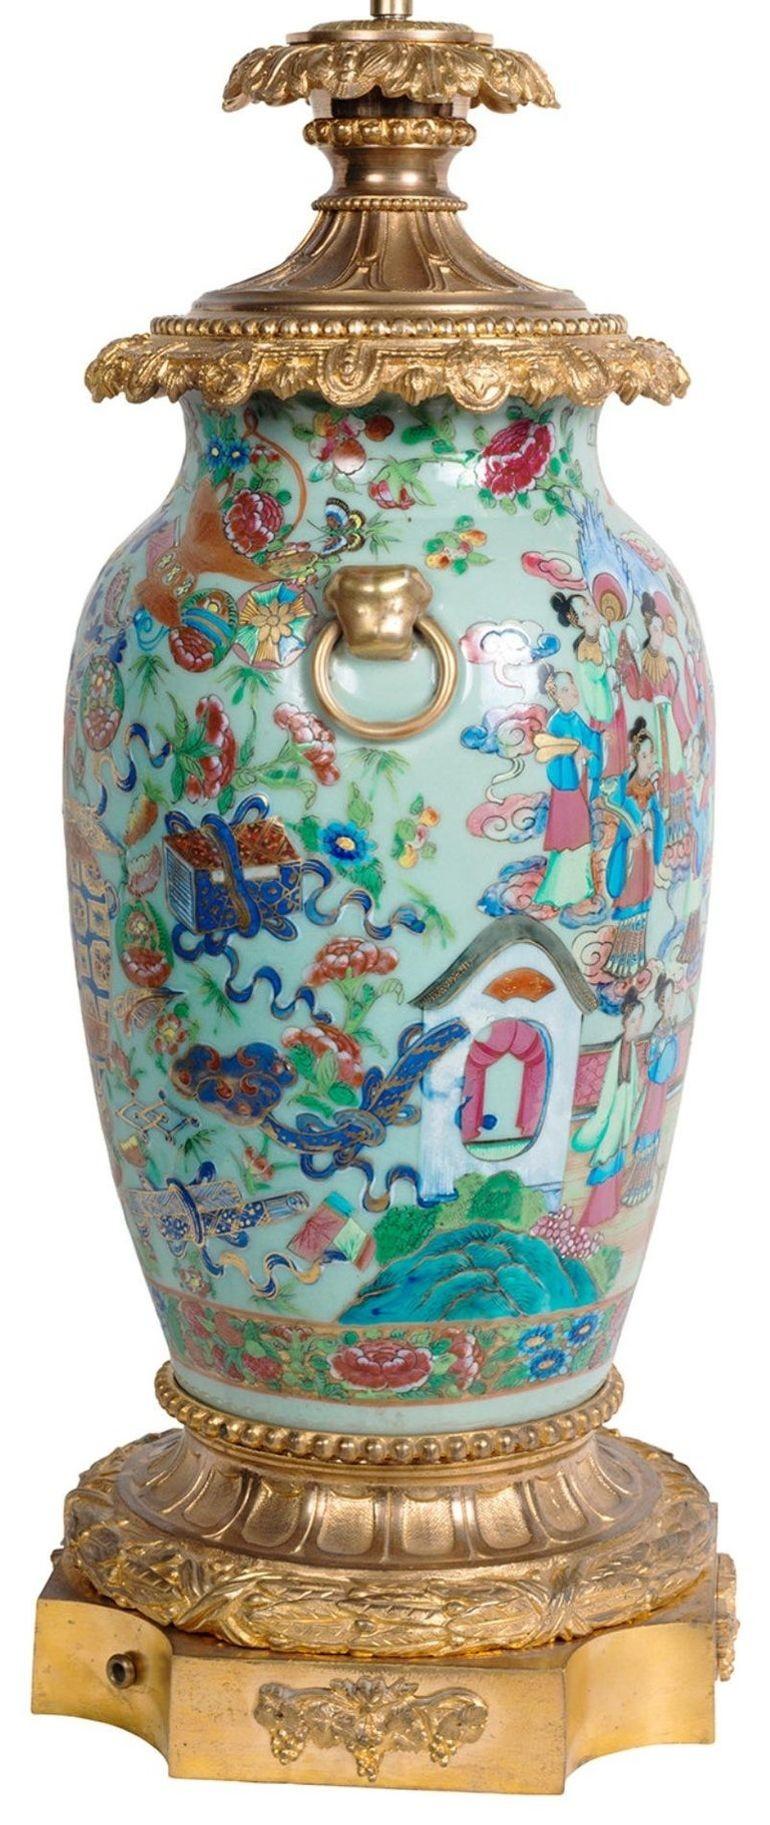 Rosenmedaillon-Vase/Lampe mit Goldbronze-Montierung aus dem 19. Jahrhundert (Chinesischer Export)